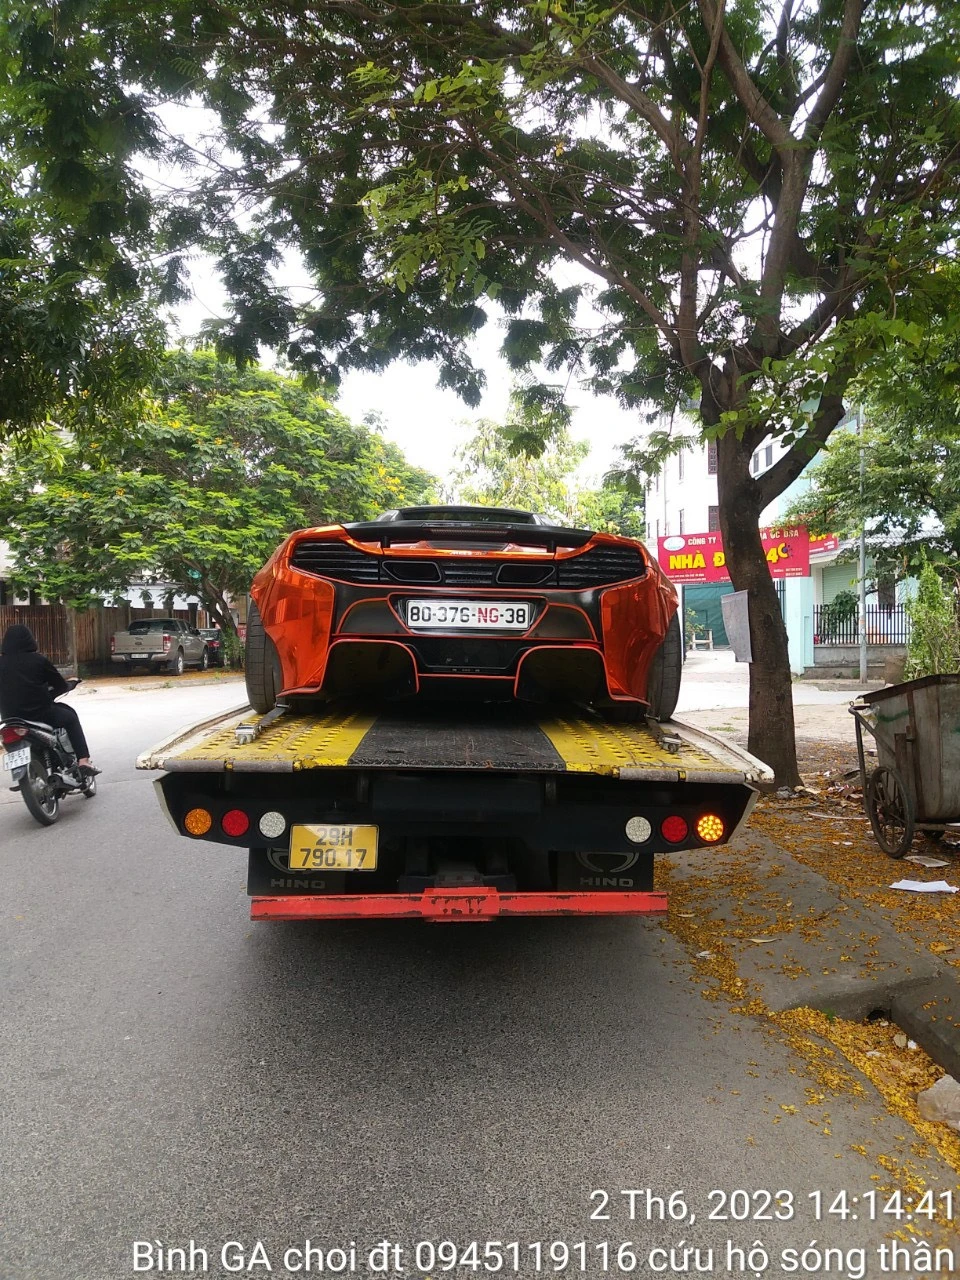 Cứu hộ, vận chuyển xe hư hỏng tại Hà Nội | Nhanh chóng, uy tín #1